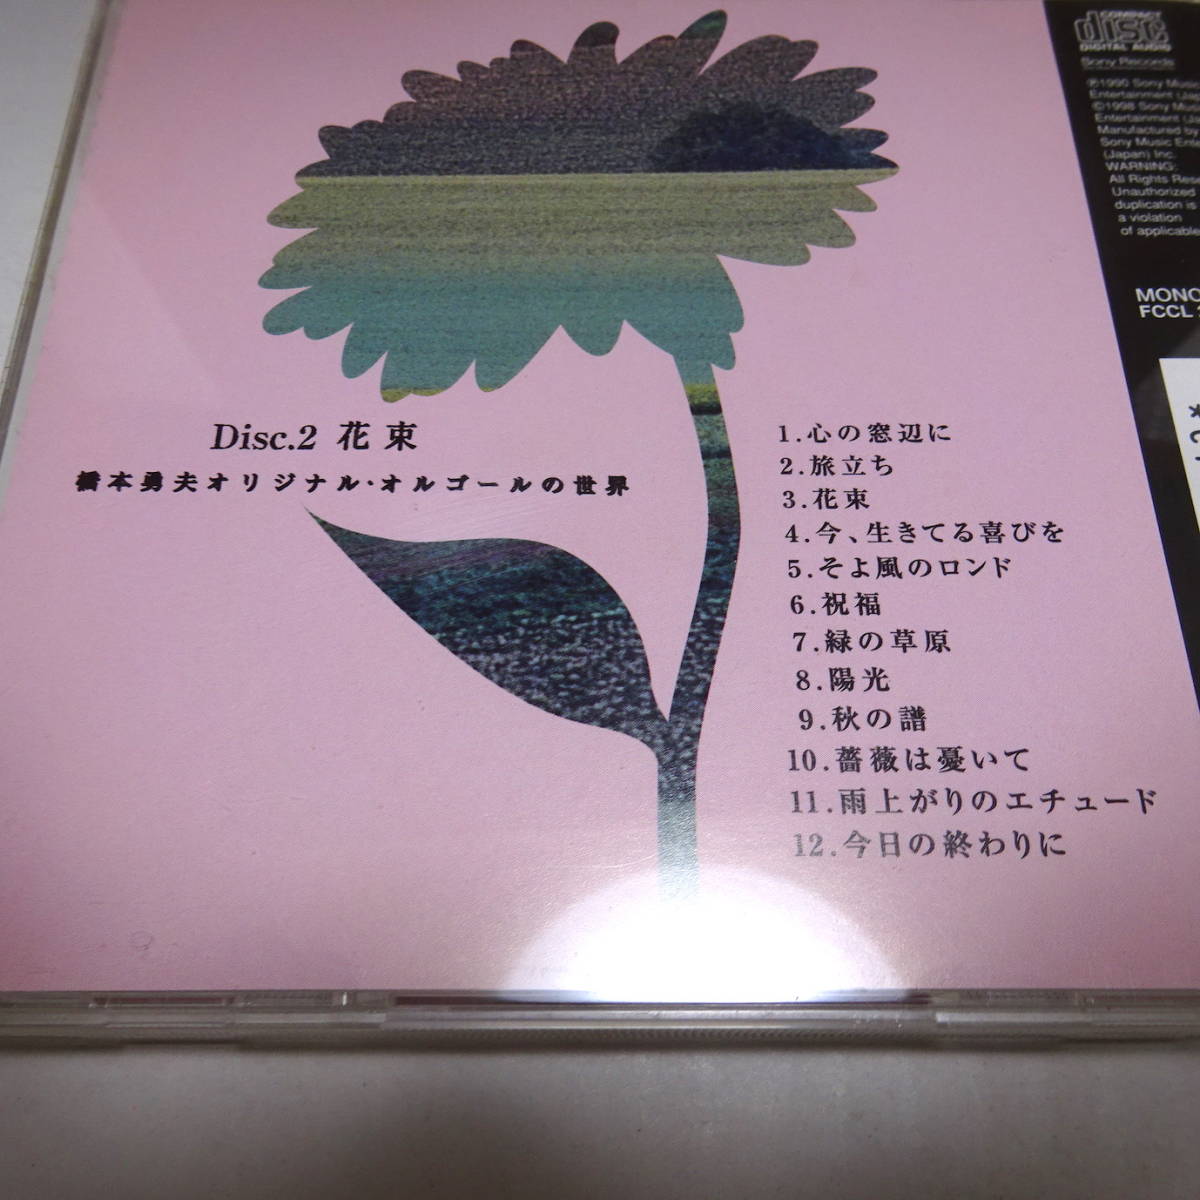 5枚組/CD-BOX「橋本勇夫 オリジナル・オルゴールの世界」_画像4